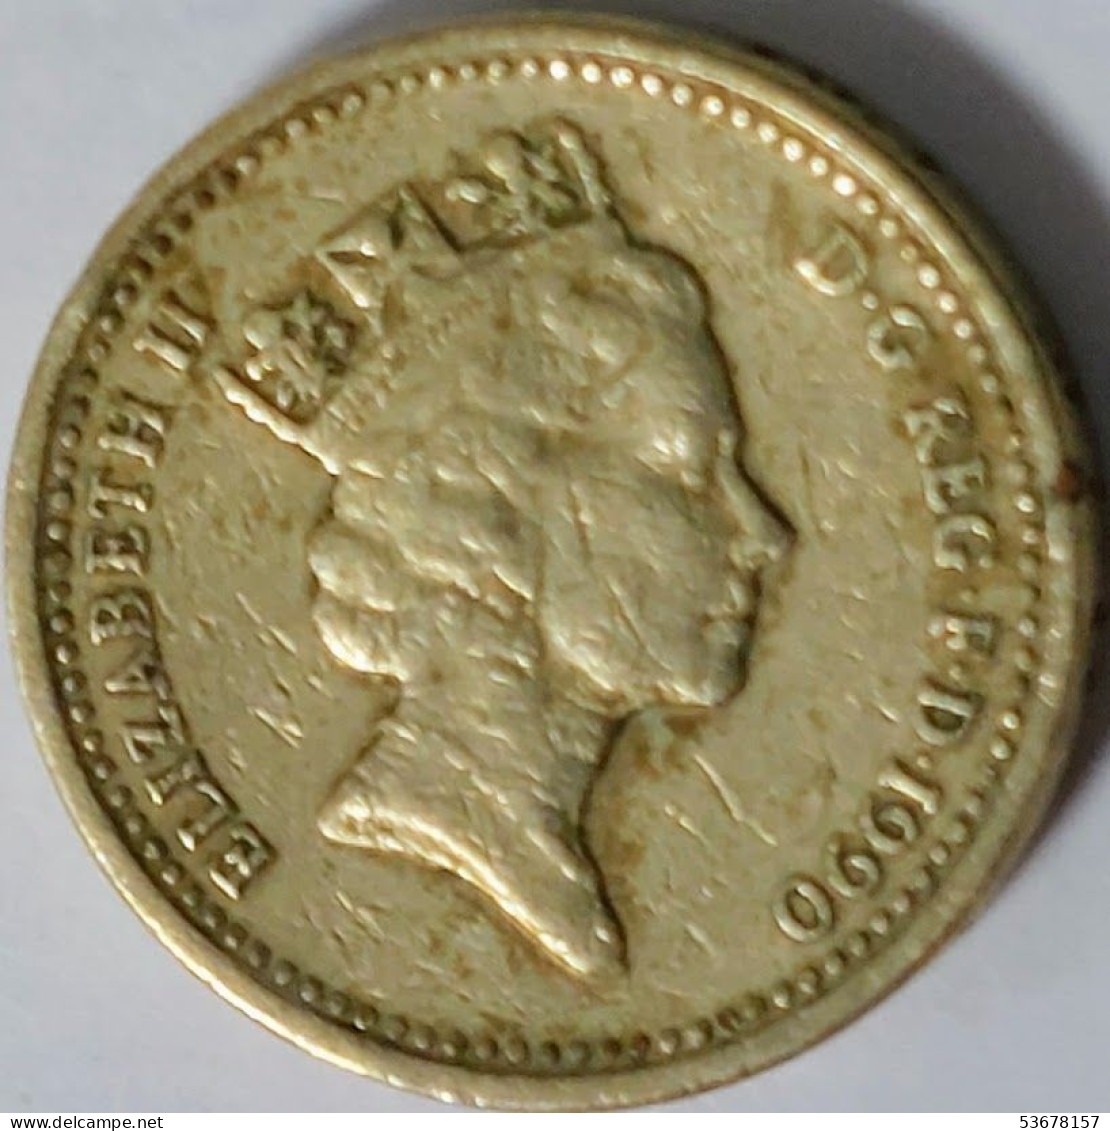 Great Britain - Pound 1990, KM# 941 (#2339) - 1 Pound